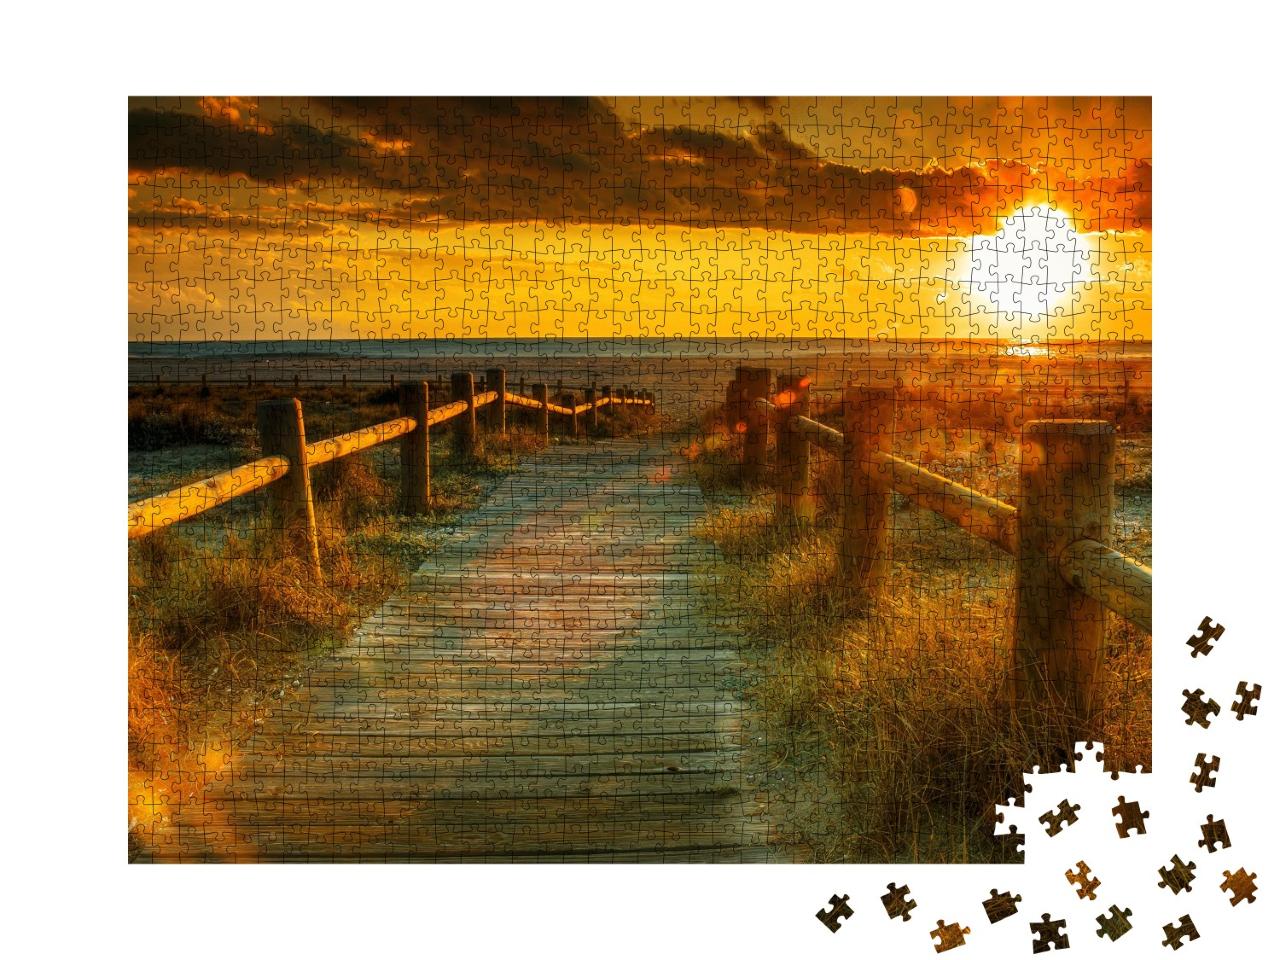 Puzzle de 1000 pièces « Passerelle en bois vers le coucher de soleil sur la plage »